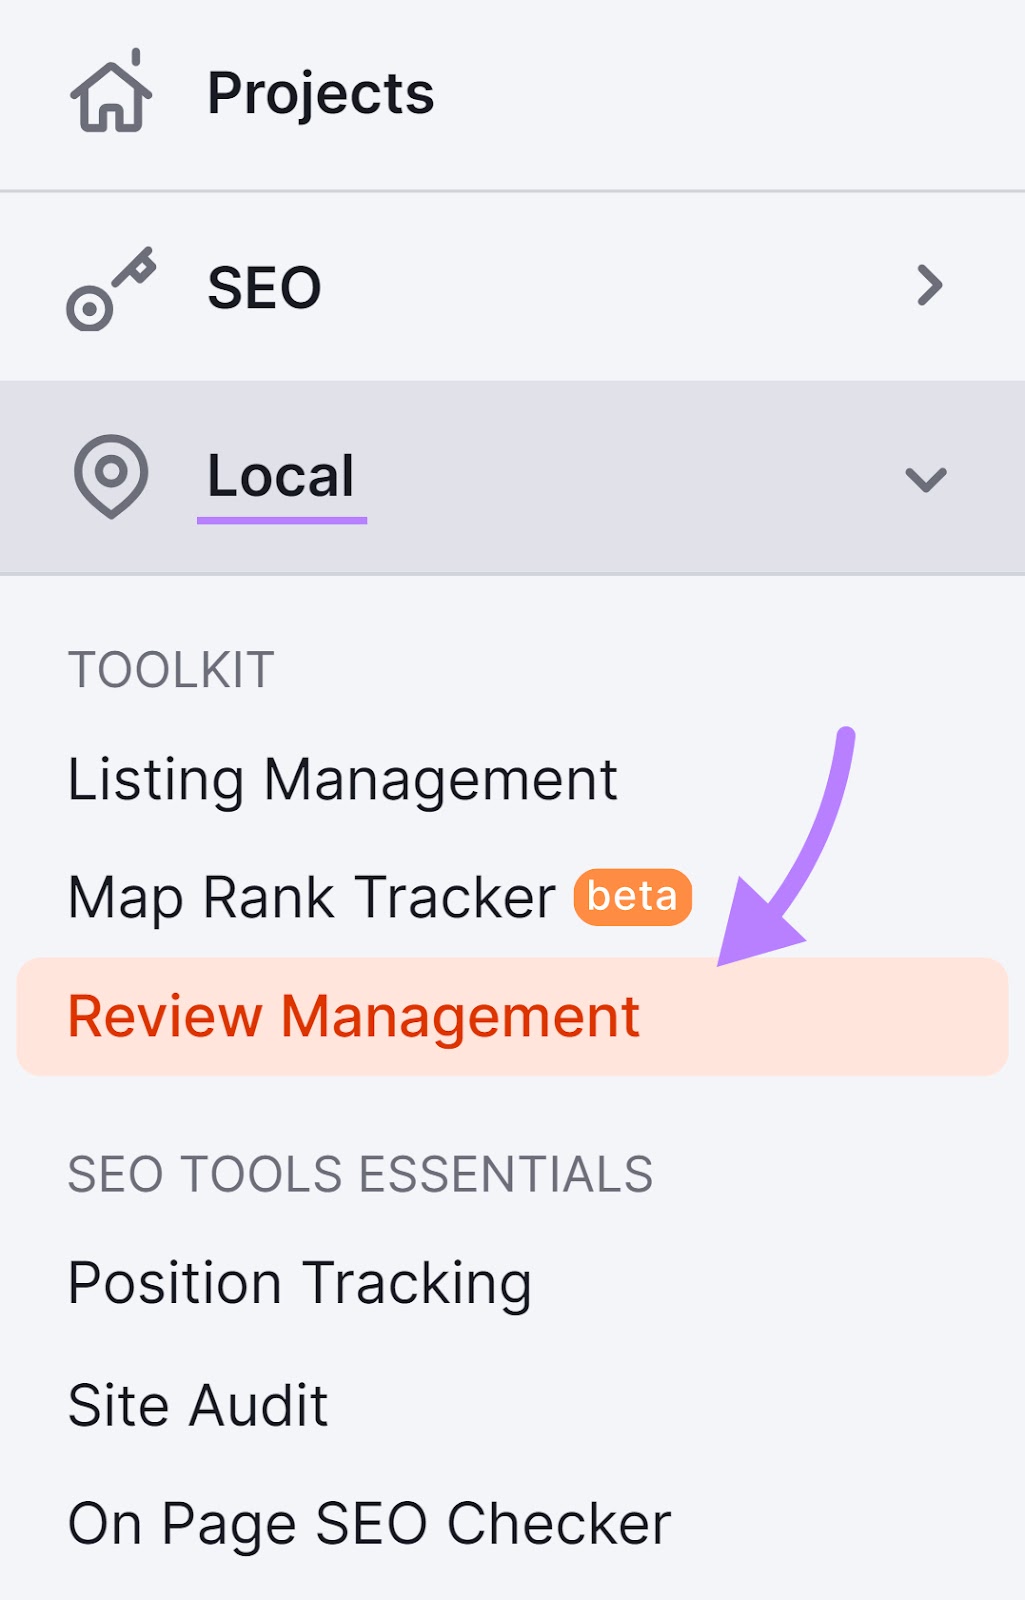 Navigating to “Review Management” in Semrush menu